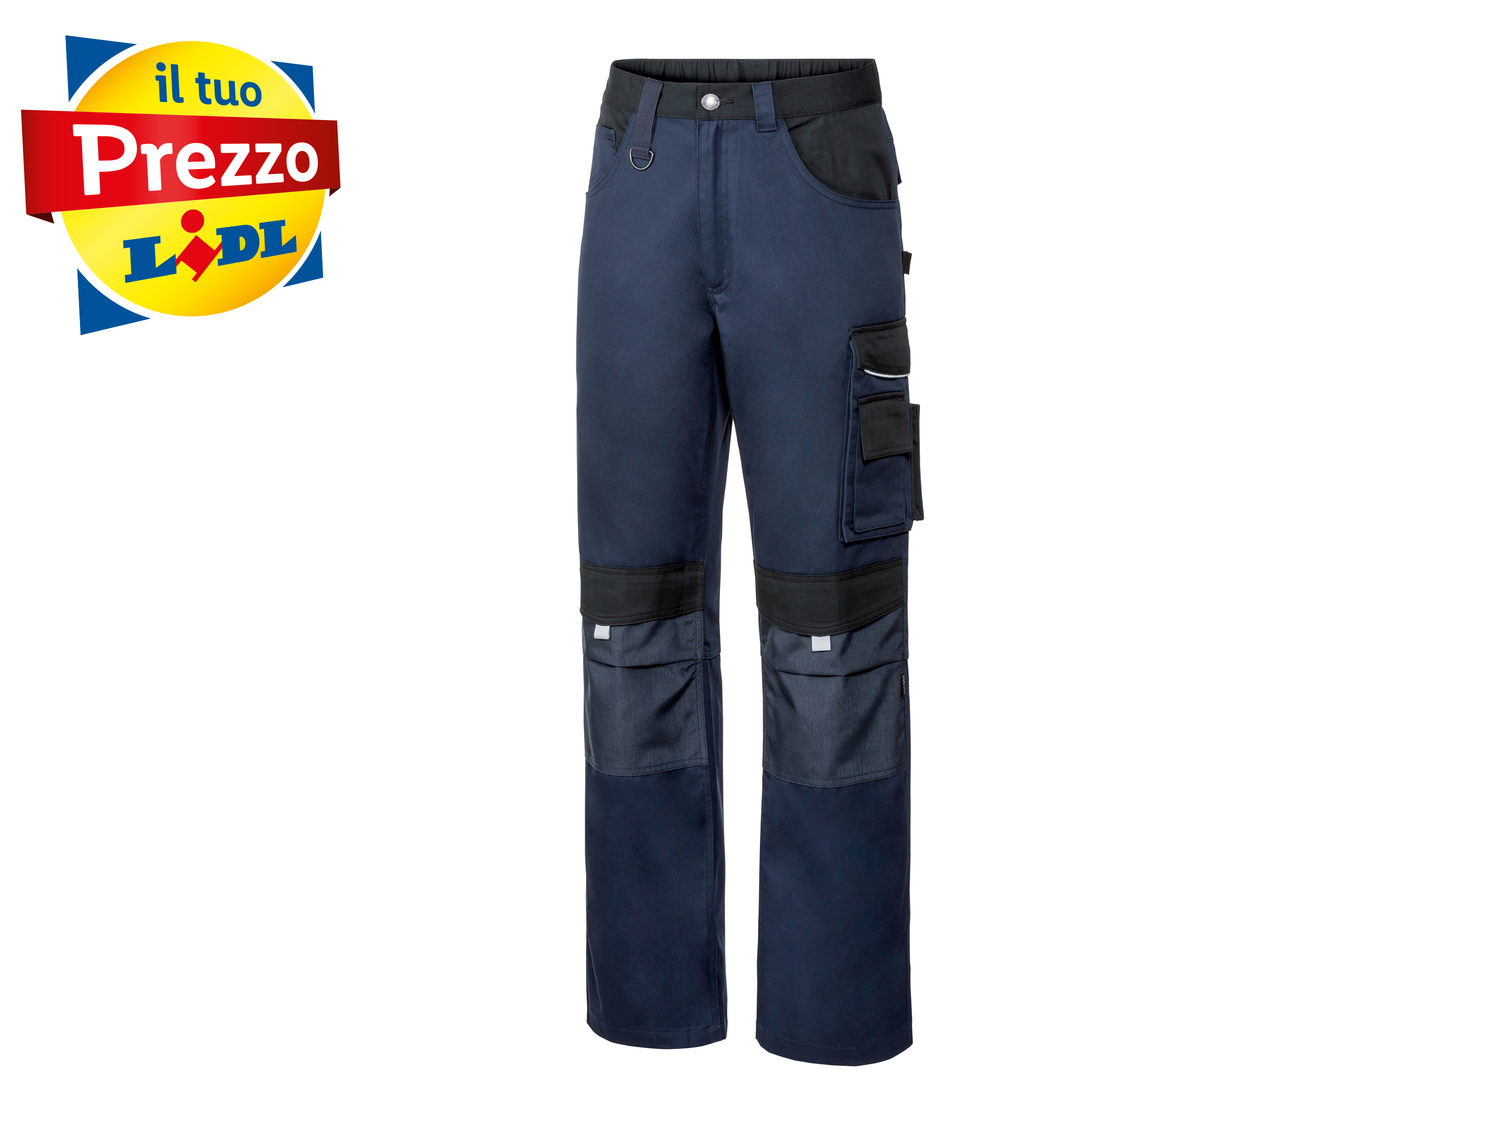 Pantaloni da lavoro per uomo Parkside, prezzo 12.99 € 
Misure: 46-56
Taglie ...